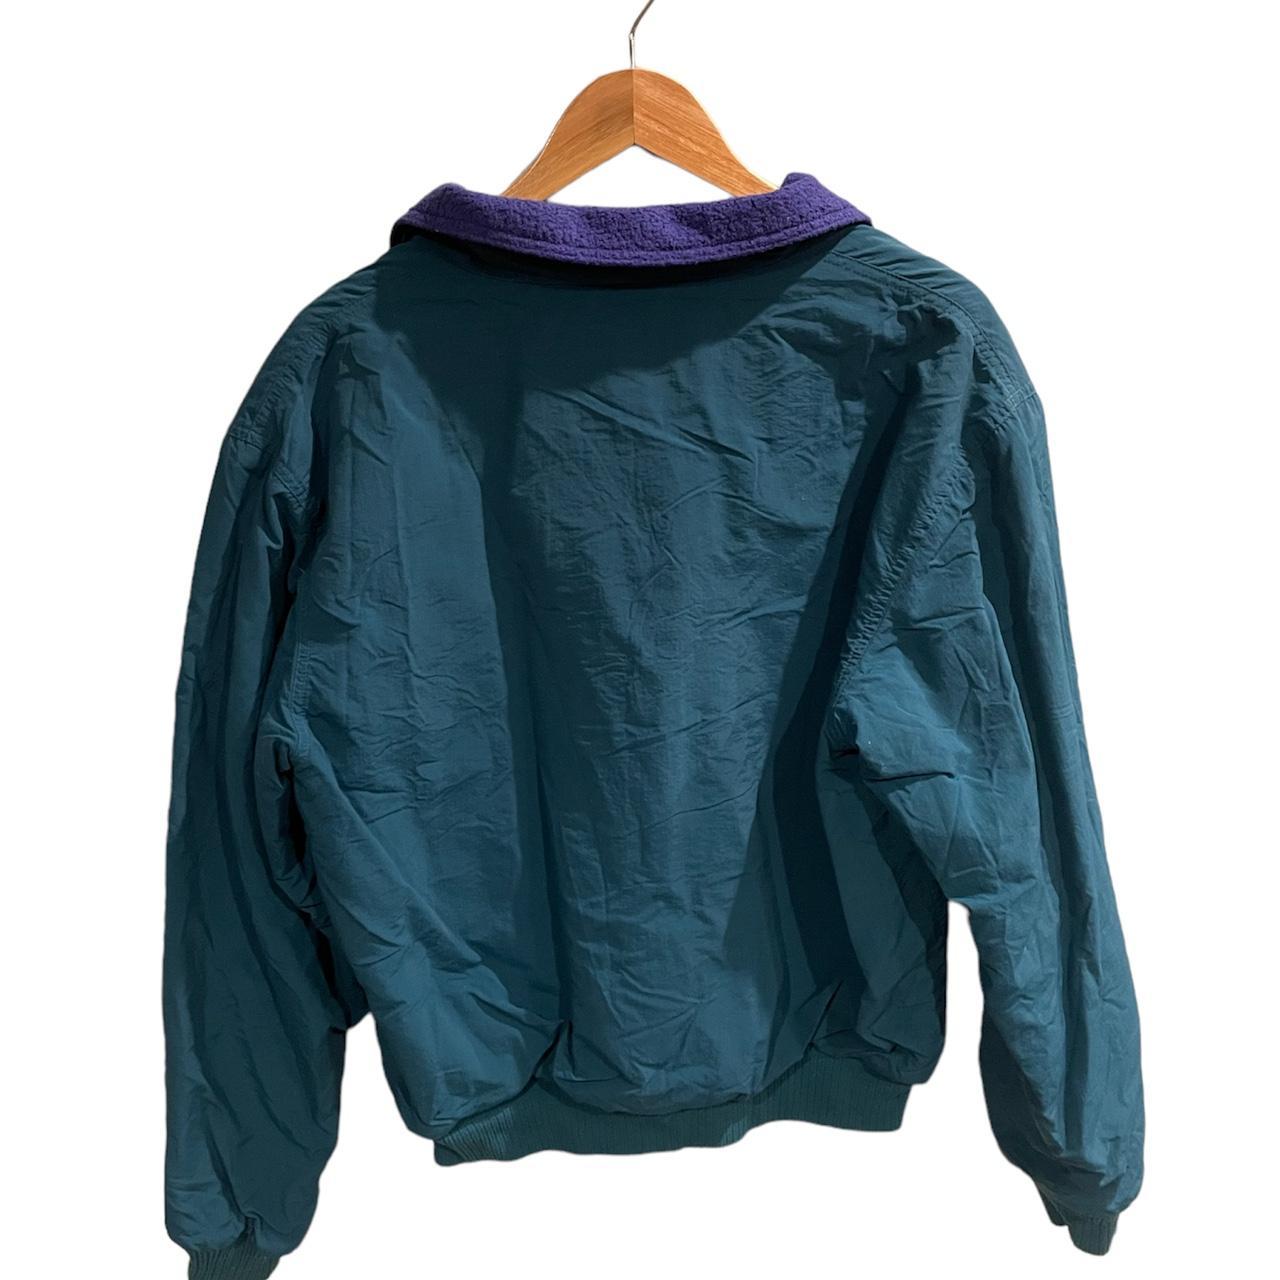 Eddie Bauer Men's Green and Purple Jacket | Depop